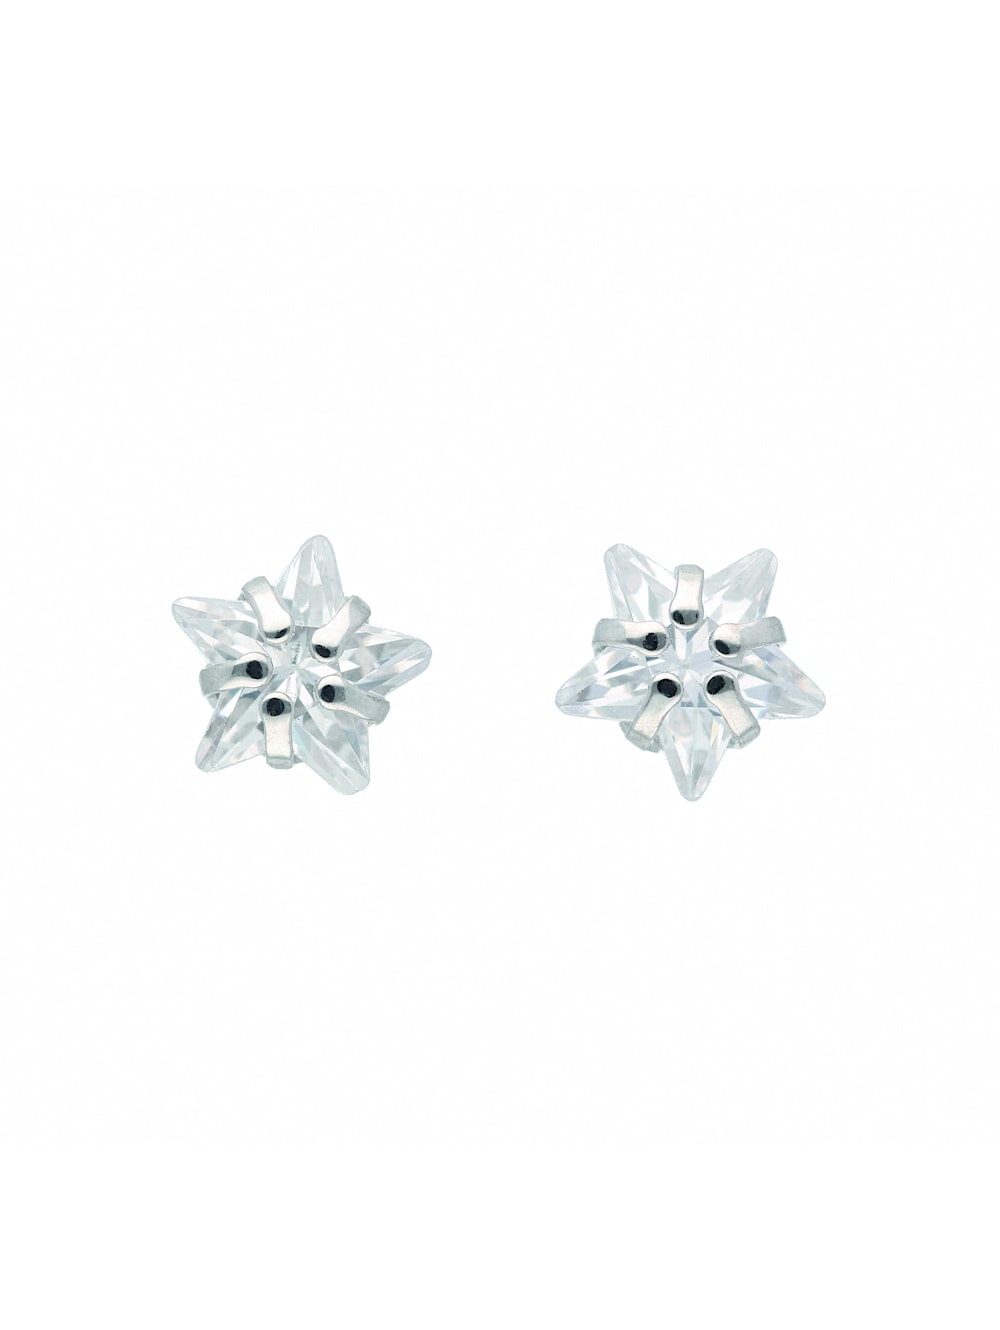 1001 Diamonds 925 mit | Zirkonia / Ohrringe Damen Silber Ohrstecker 1 Wenz Silberschmuck Paar Stern